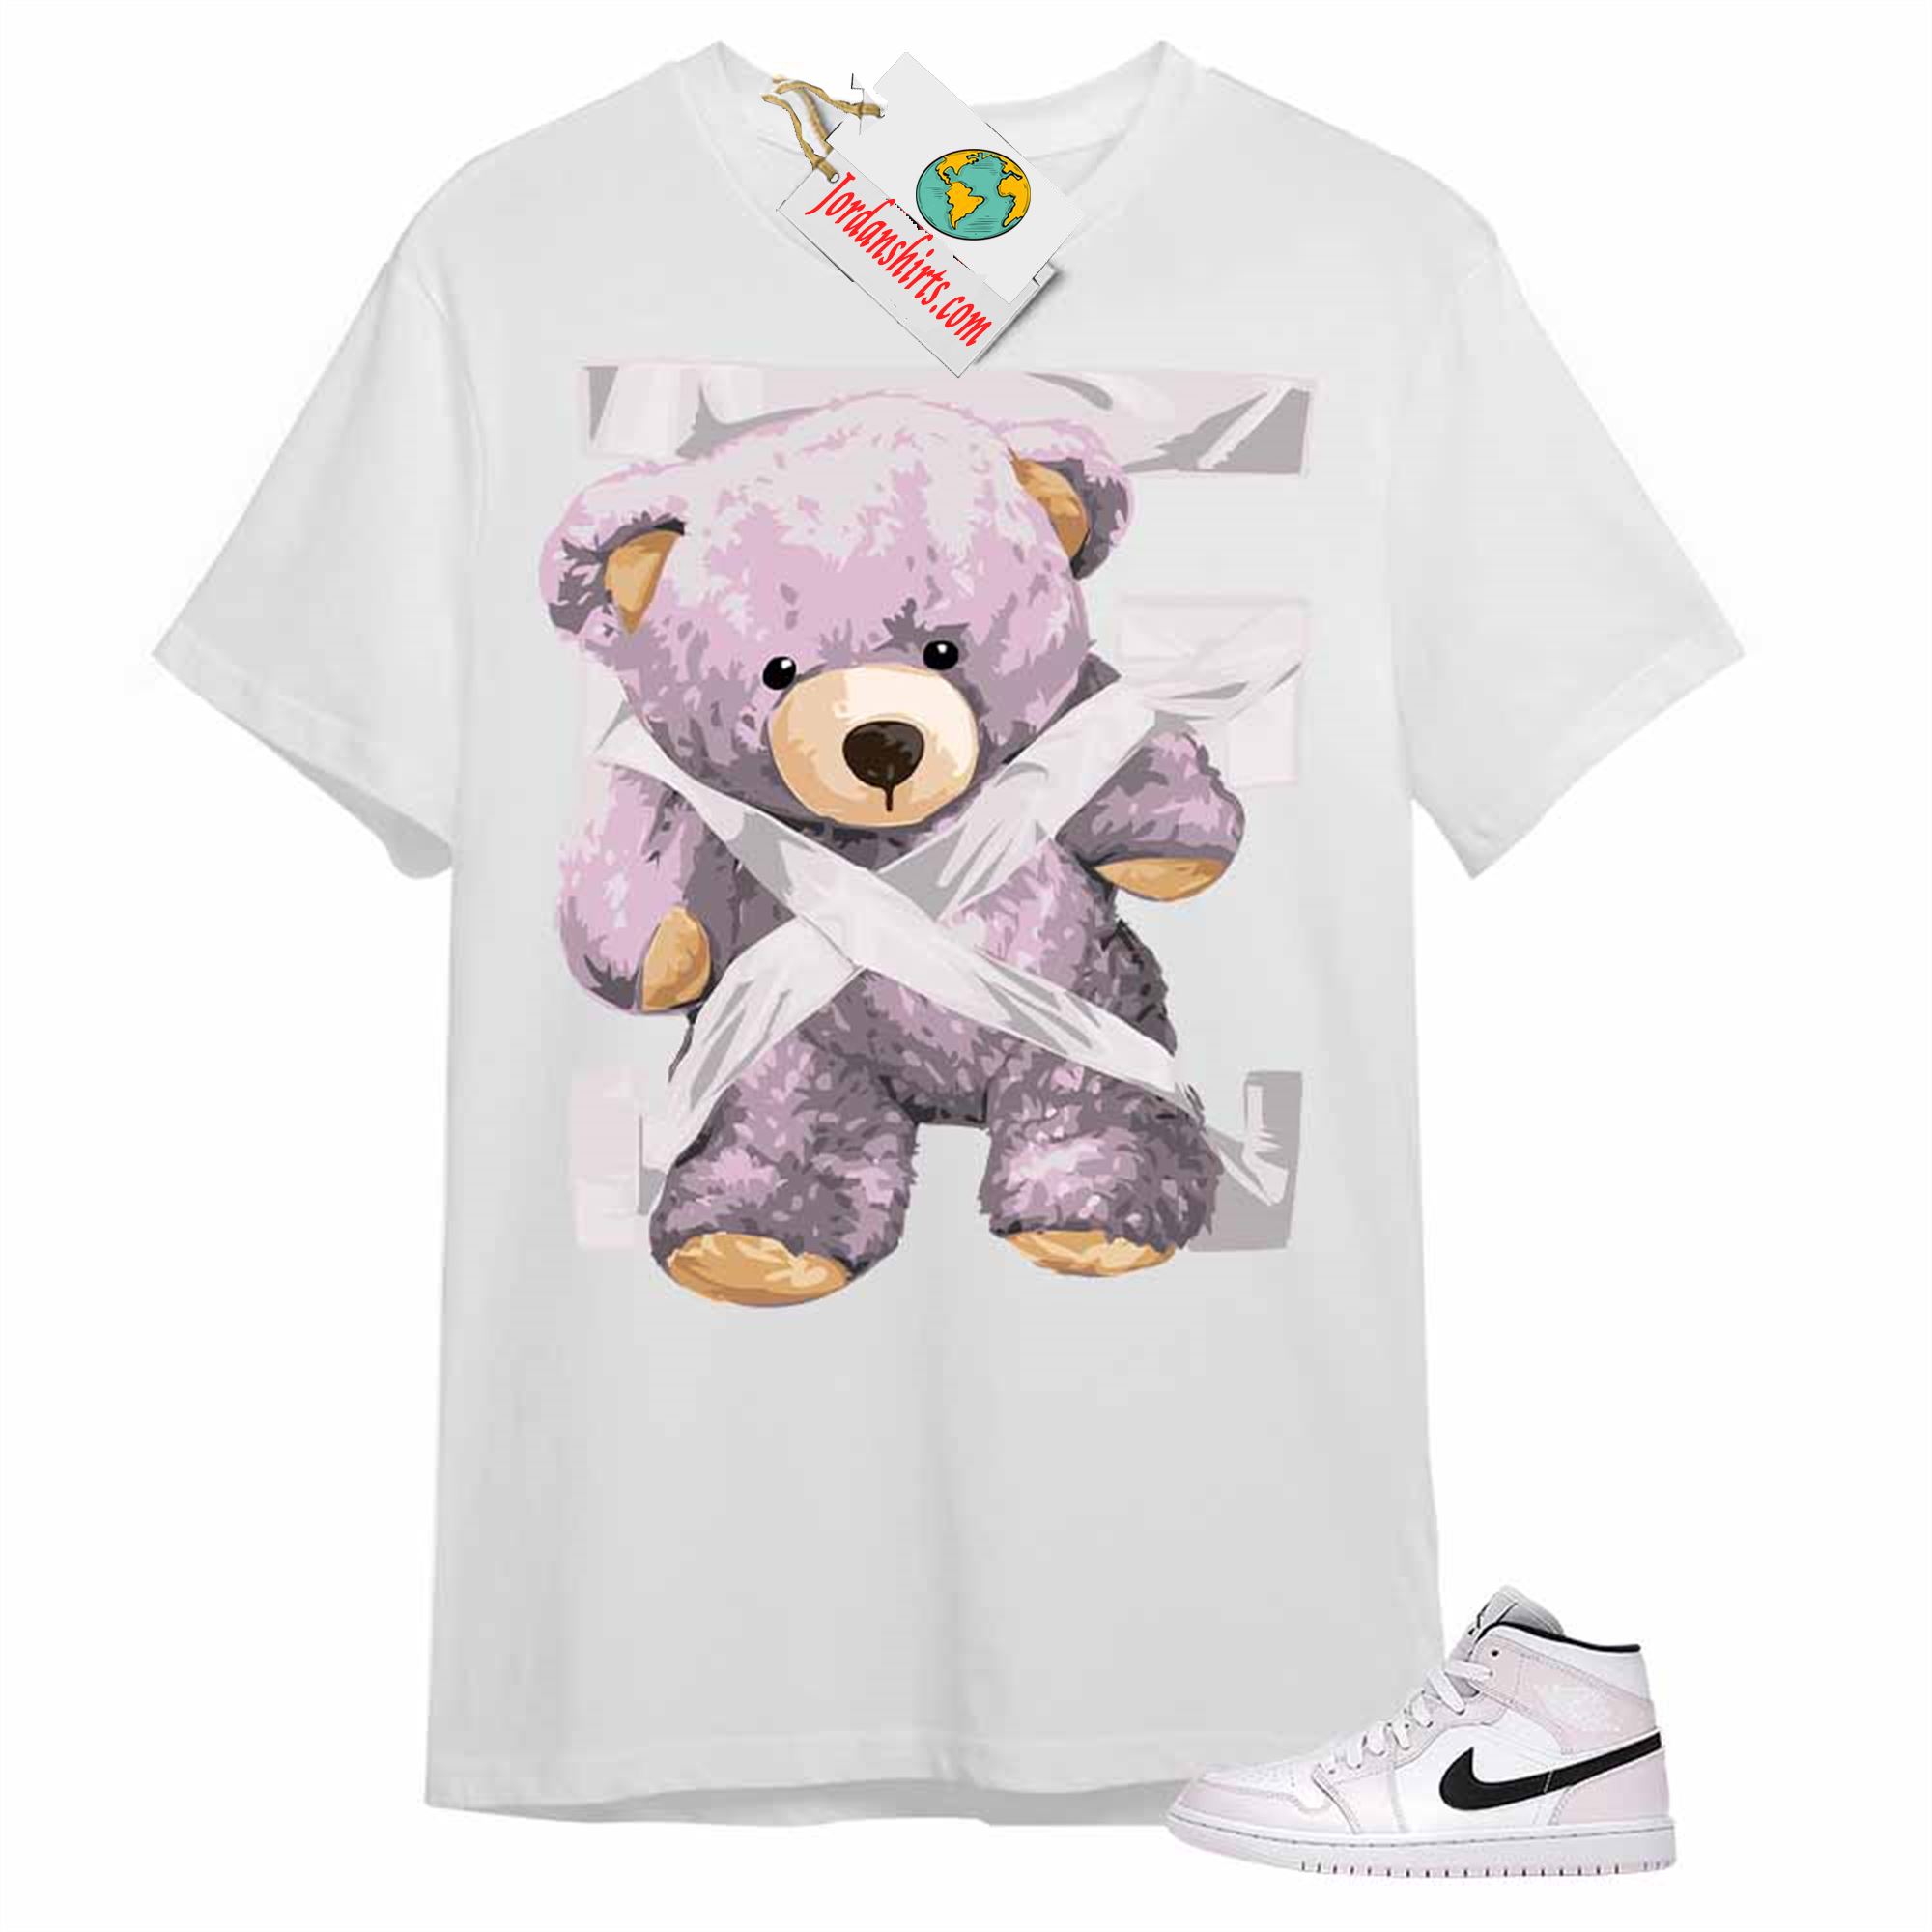 Jordan 1 Shirt, Teddy Bear Duck Tape White Air Jordan 1 Barely Rose 1s Full Size Up To 5xl